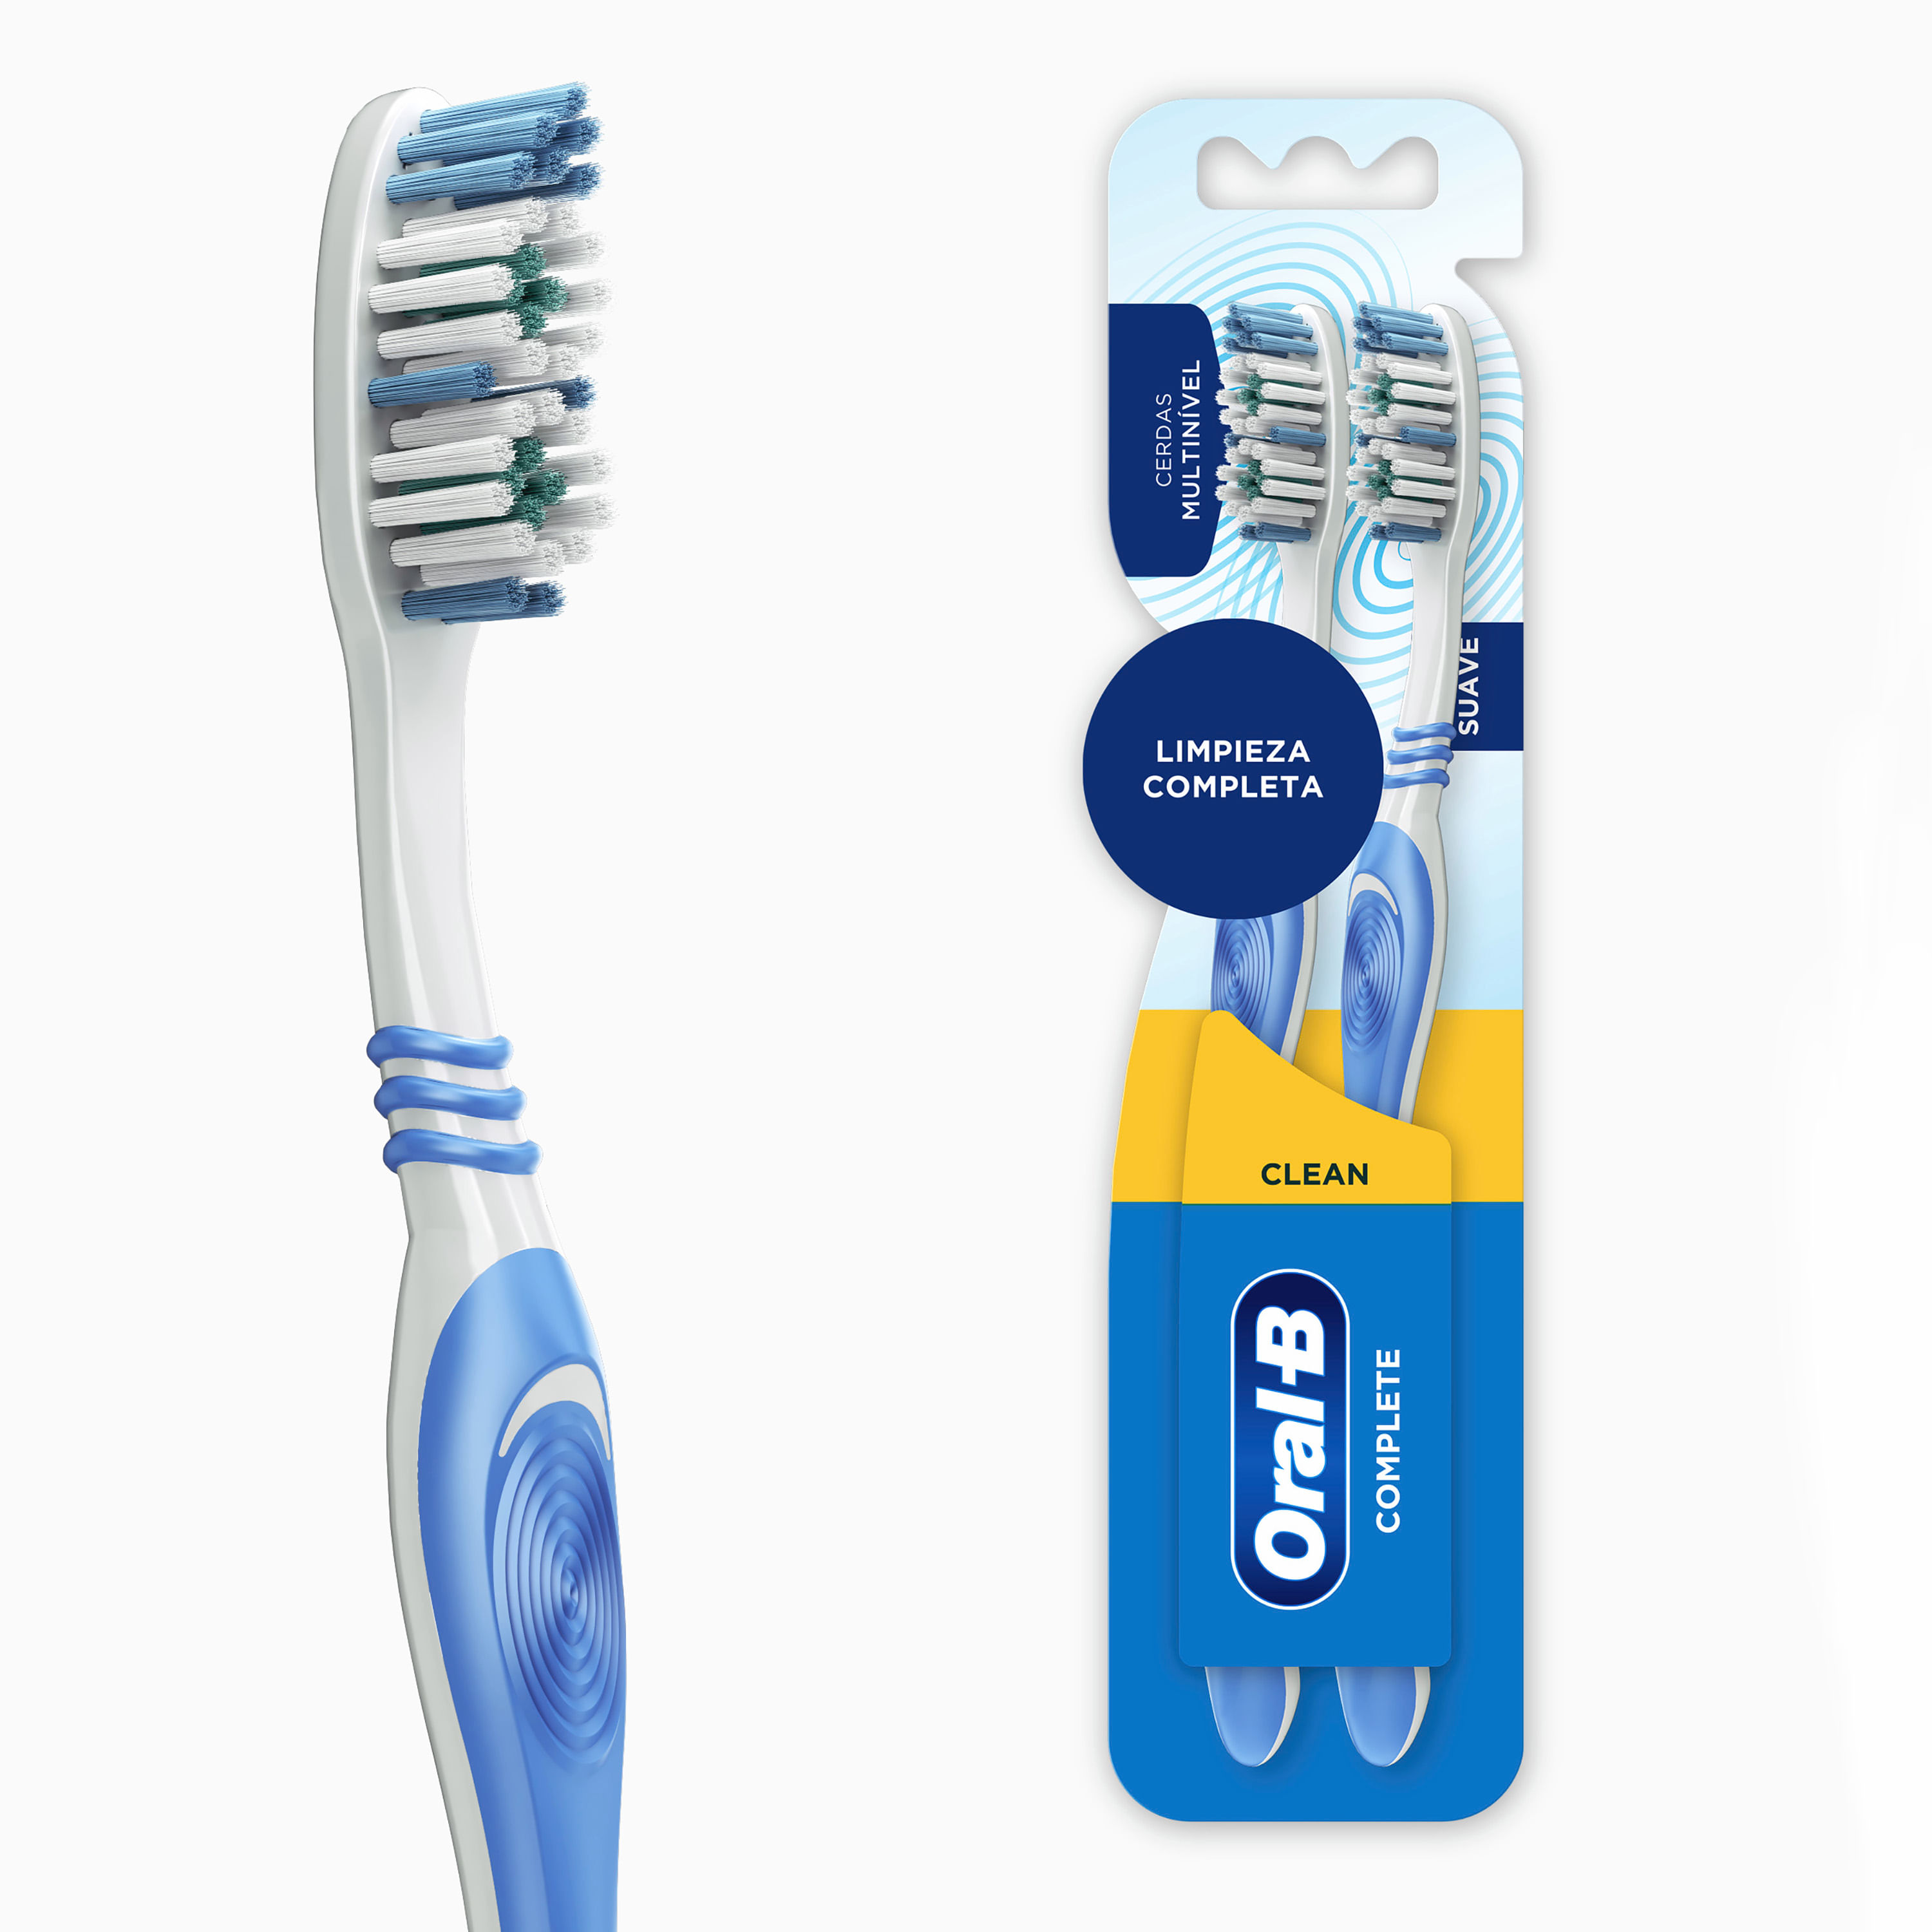  Cepillos de dientes desechables con pasta de dientes, paquete  de 200, cepillo de dientes hueco amarillo con 0.35 oz de pasta de dientes  envueltos individualmente, kit de cepillos de dientes desechables